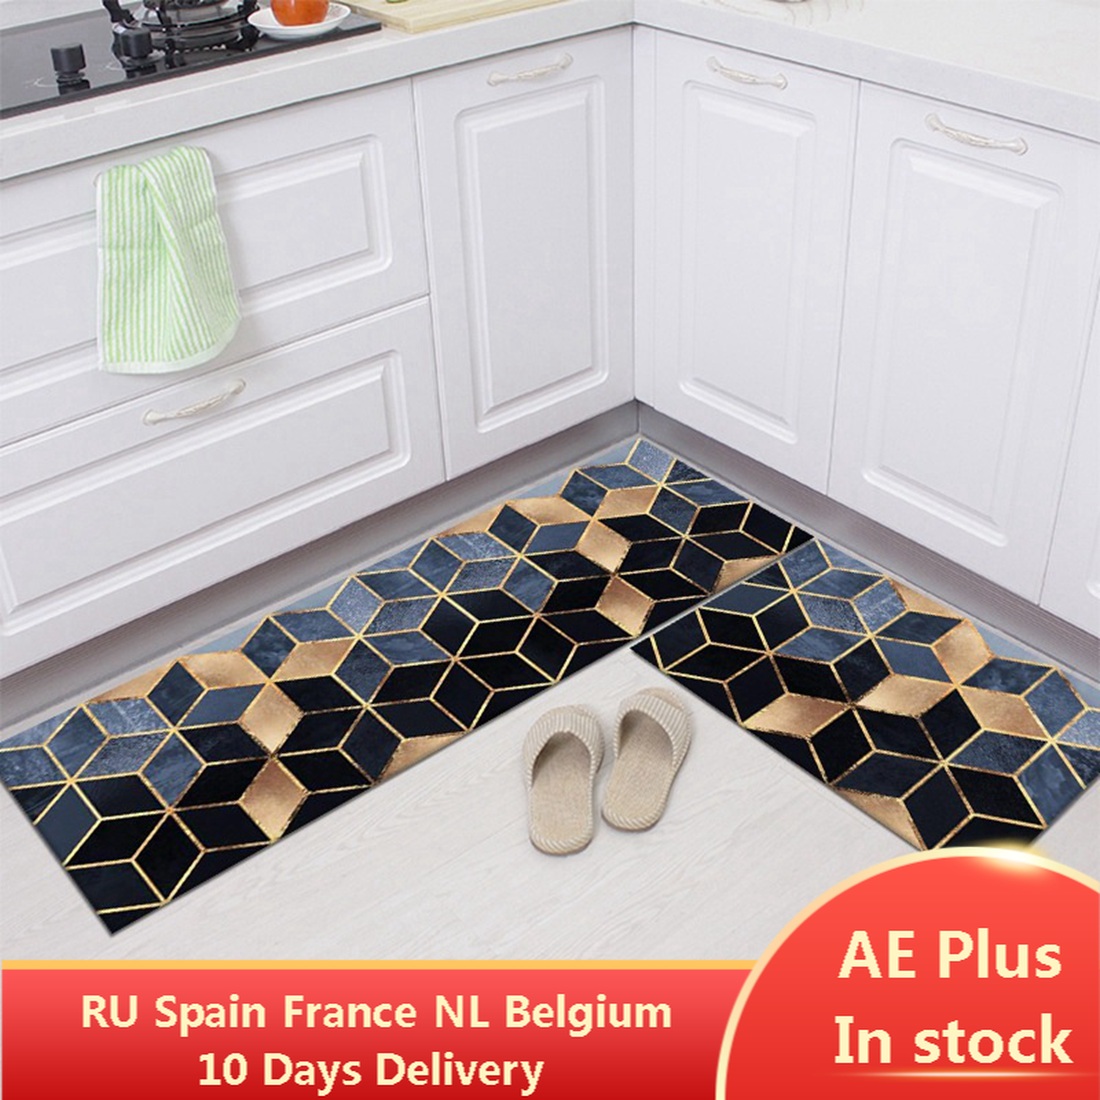 Strip Waterproof Kitchen Floor Mats, Modern Kitchen Rugs